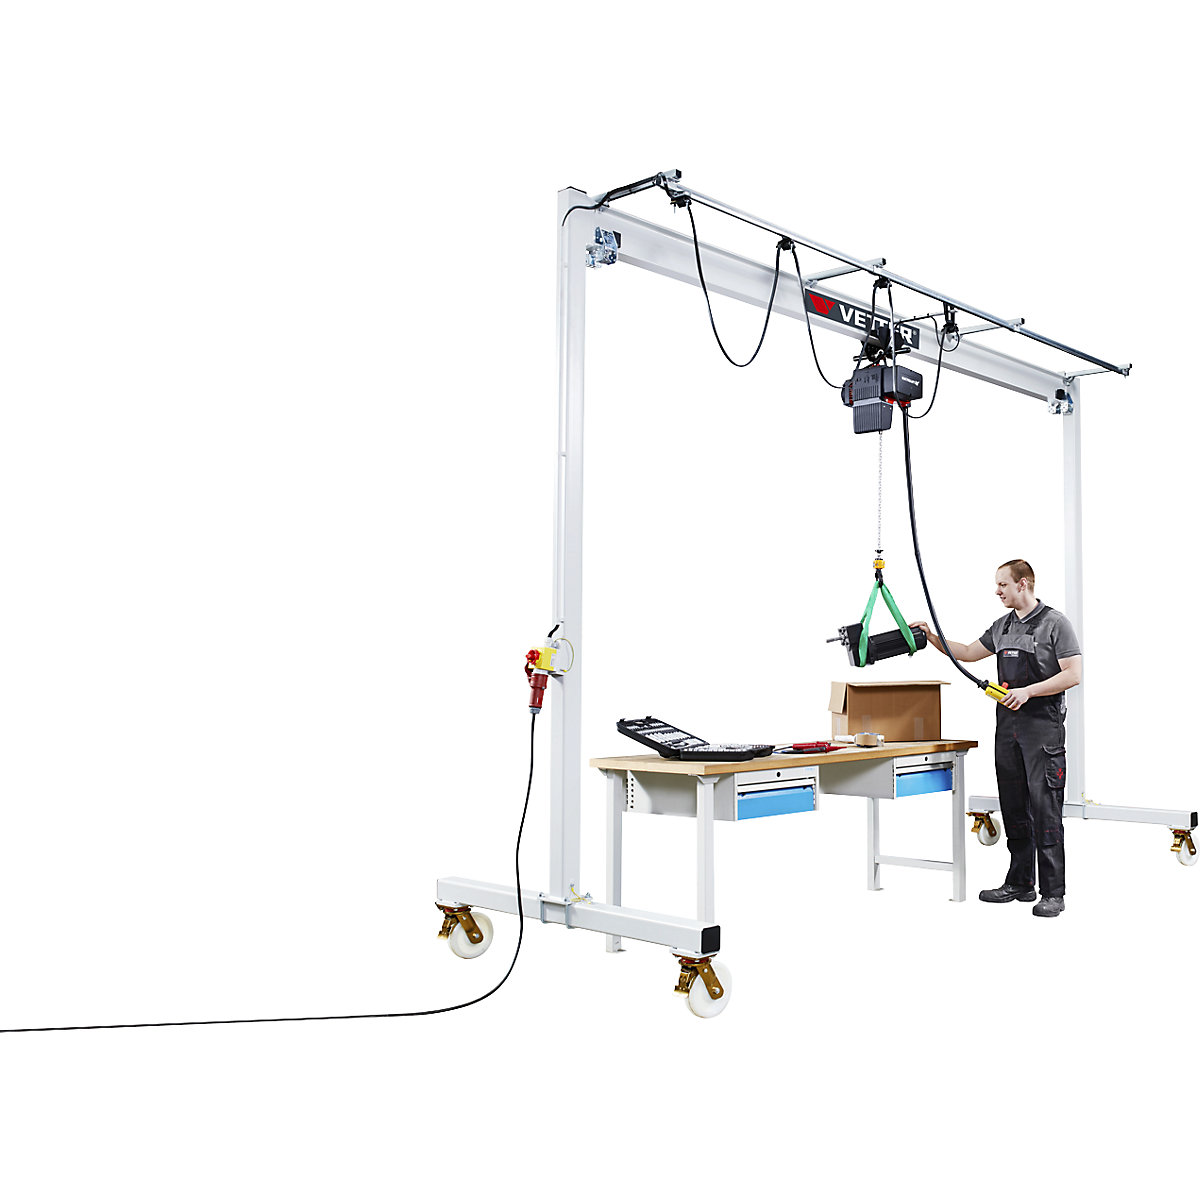 Steel mobile gantry crane PA – Vetter (Product illustration 3)-2